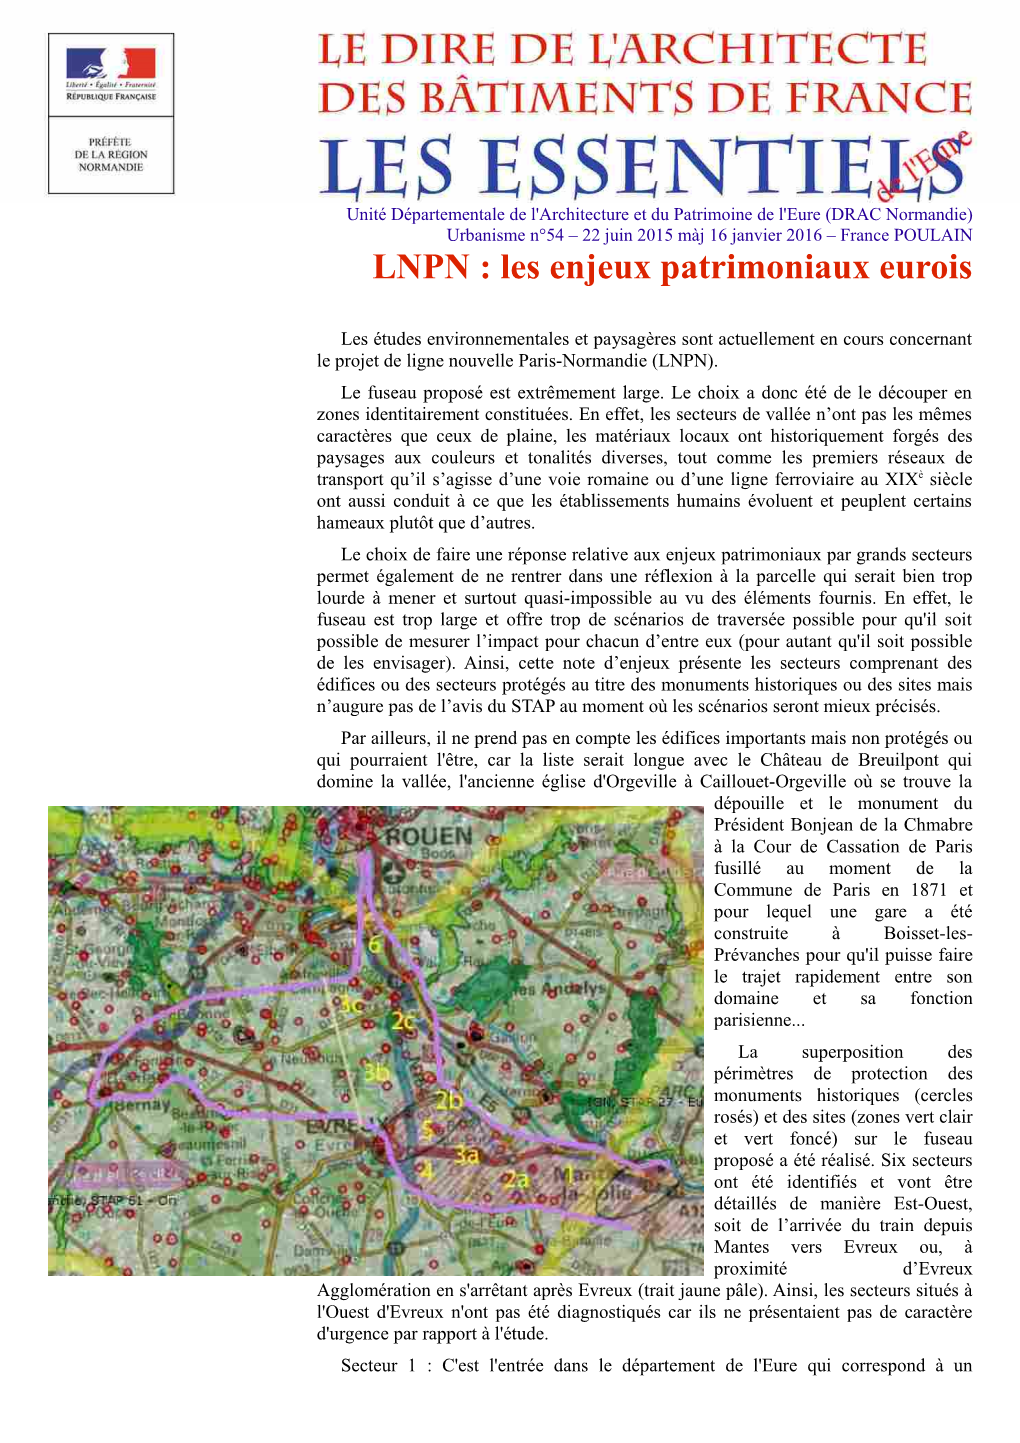 LNPN : Les Enjeux Patrimoniaux Eurois